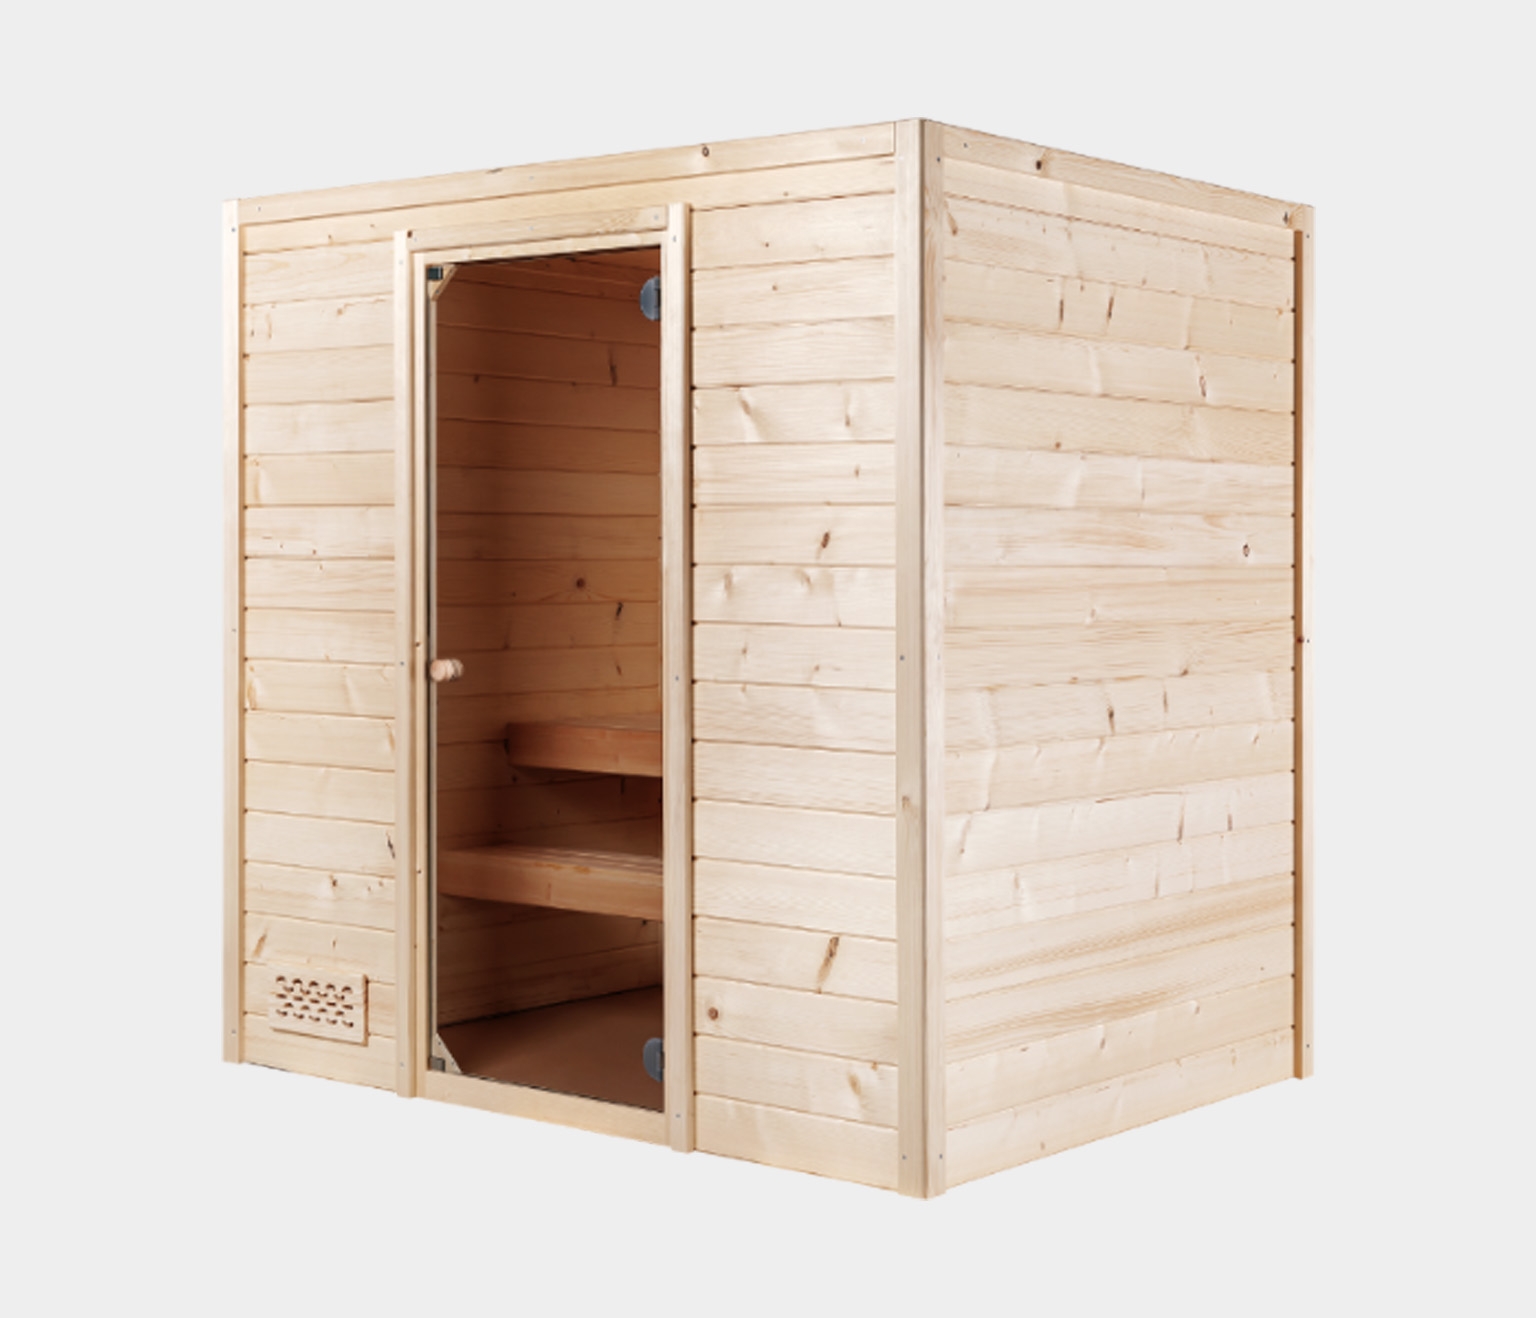 Sauna / bastu Oulu HS2 från Hanscraft. Modern bastu inomhus med plats för 3 personer. Bastubyggsatsen levereras i moduler, som gör installation snabb och enkel